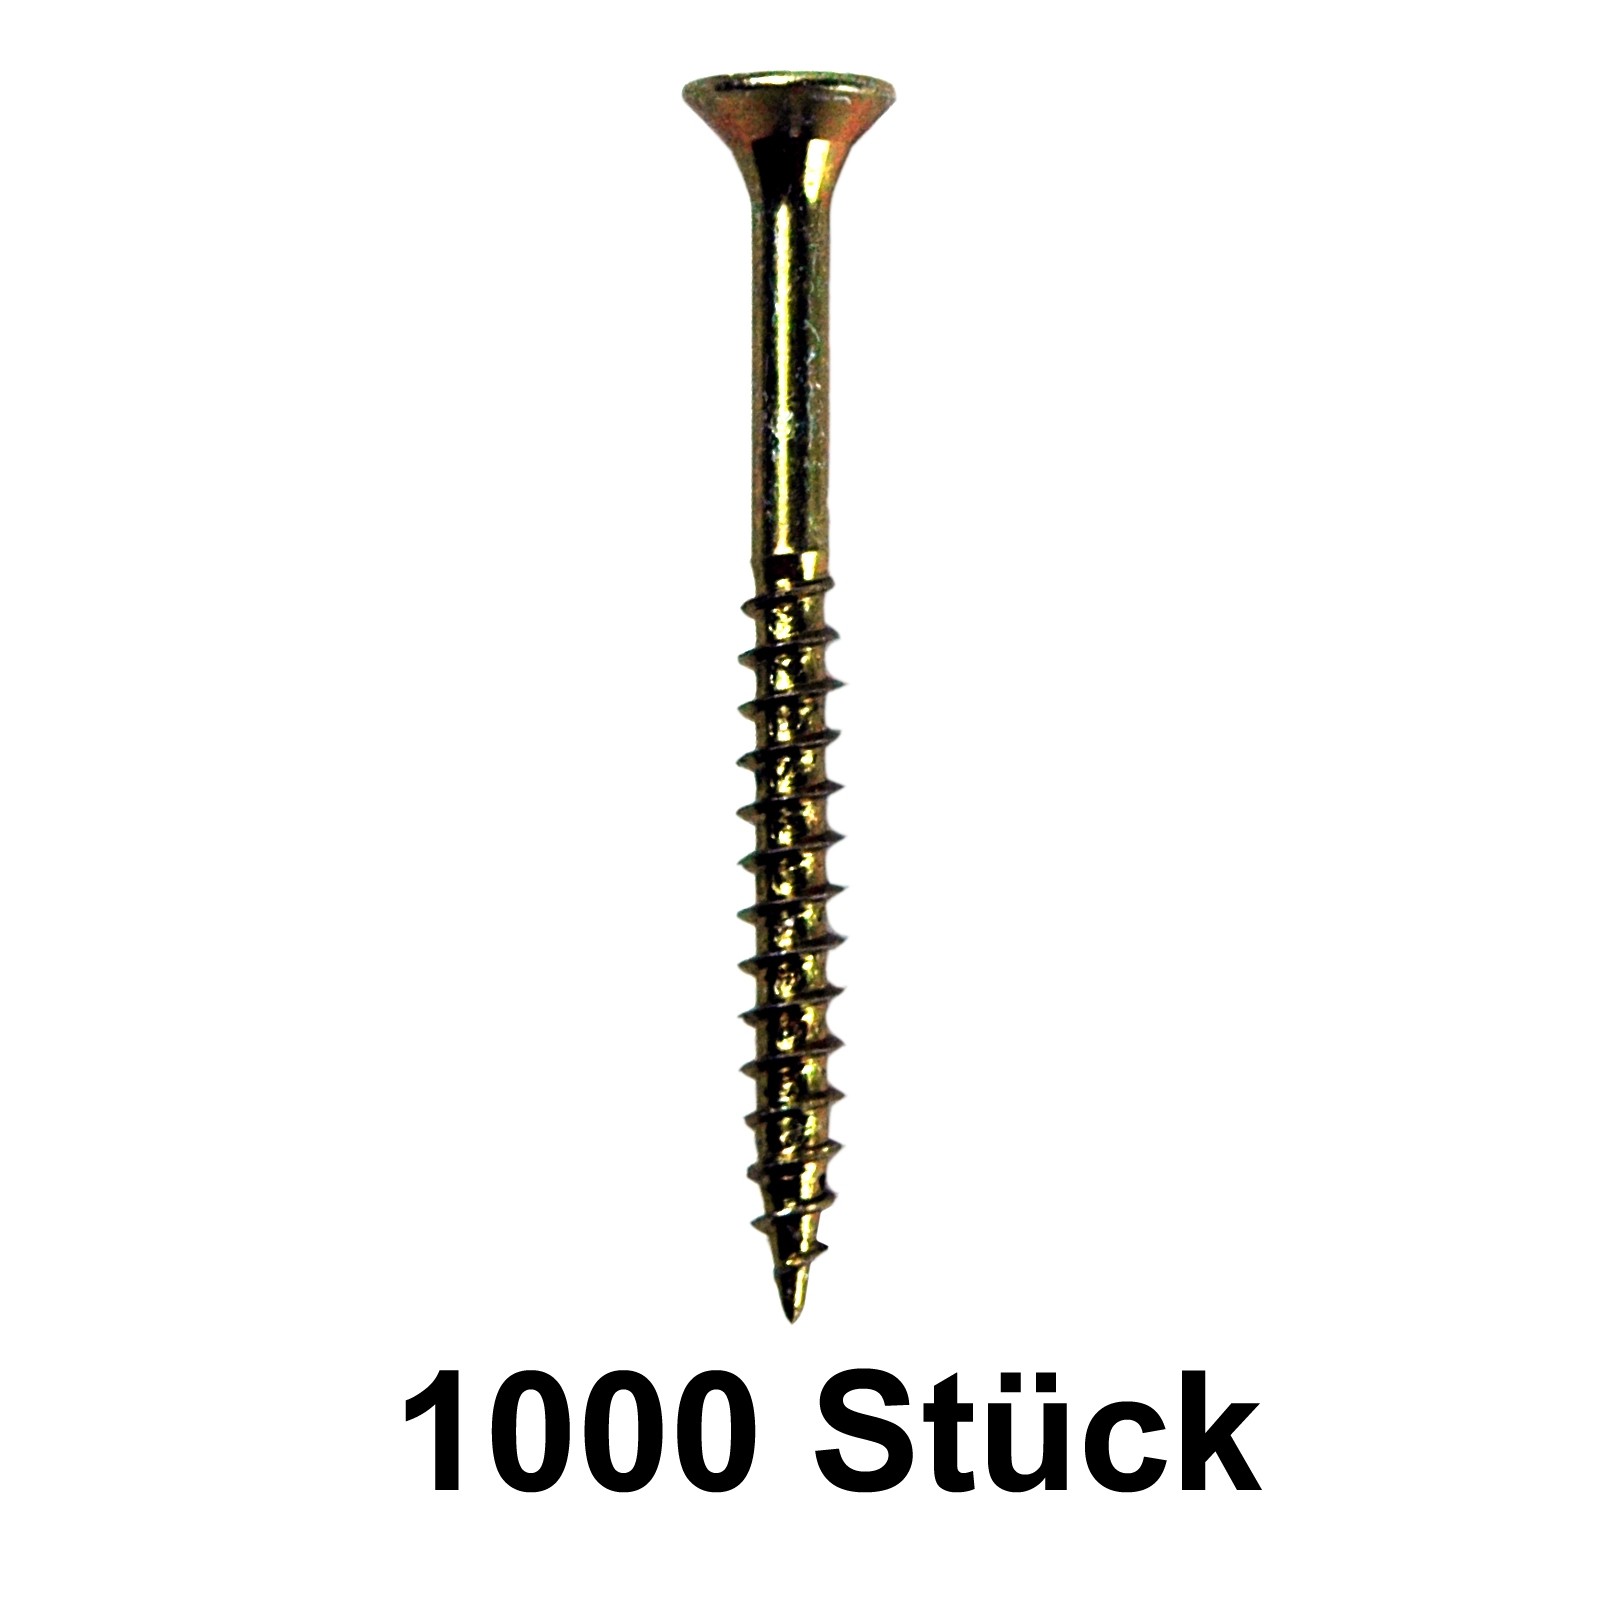 1000 Stück Fakkt-Schraube Screw 3,5x40 mm gelb